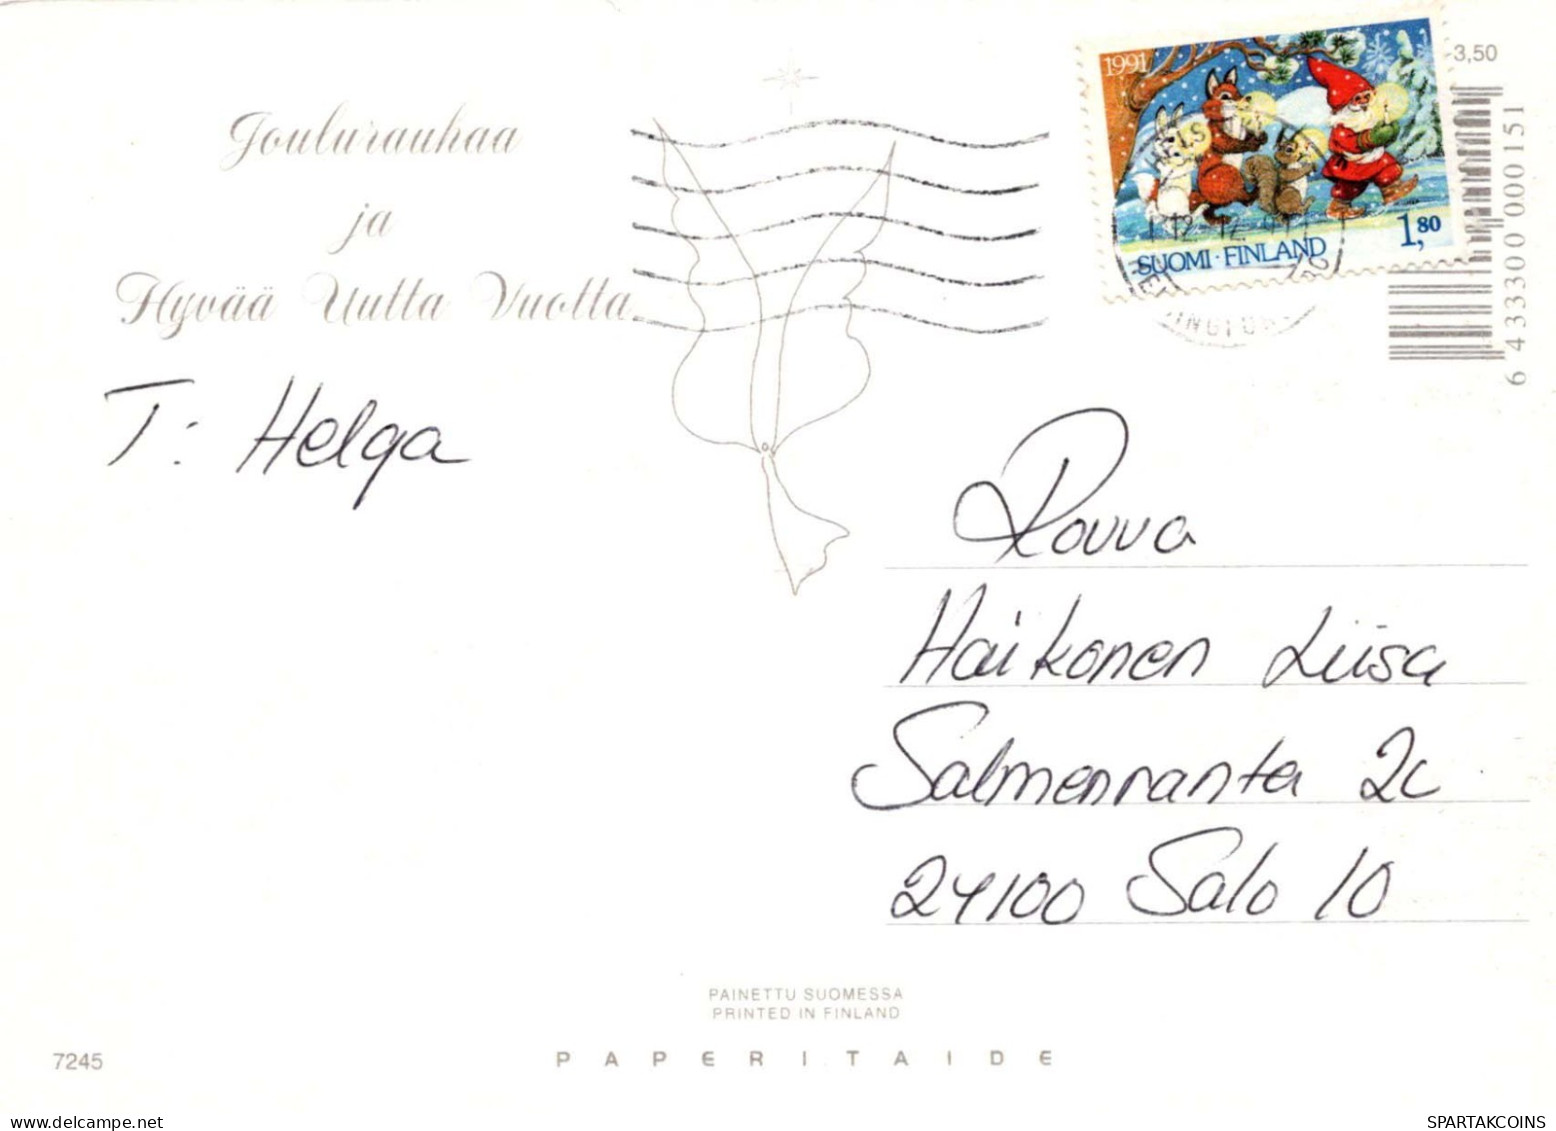 Virgen María Virgen Niño JESÚS Navidad Religión Vintage Tarjeta Postal CPSM #PBB765.ES - Vergine Maria E Madonne